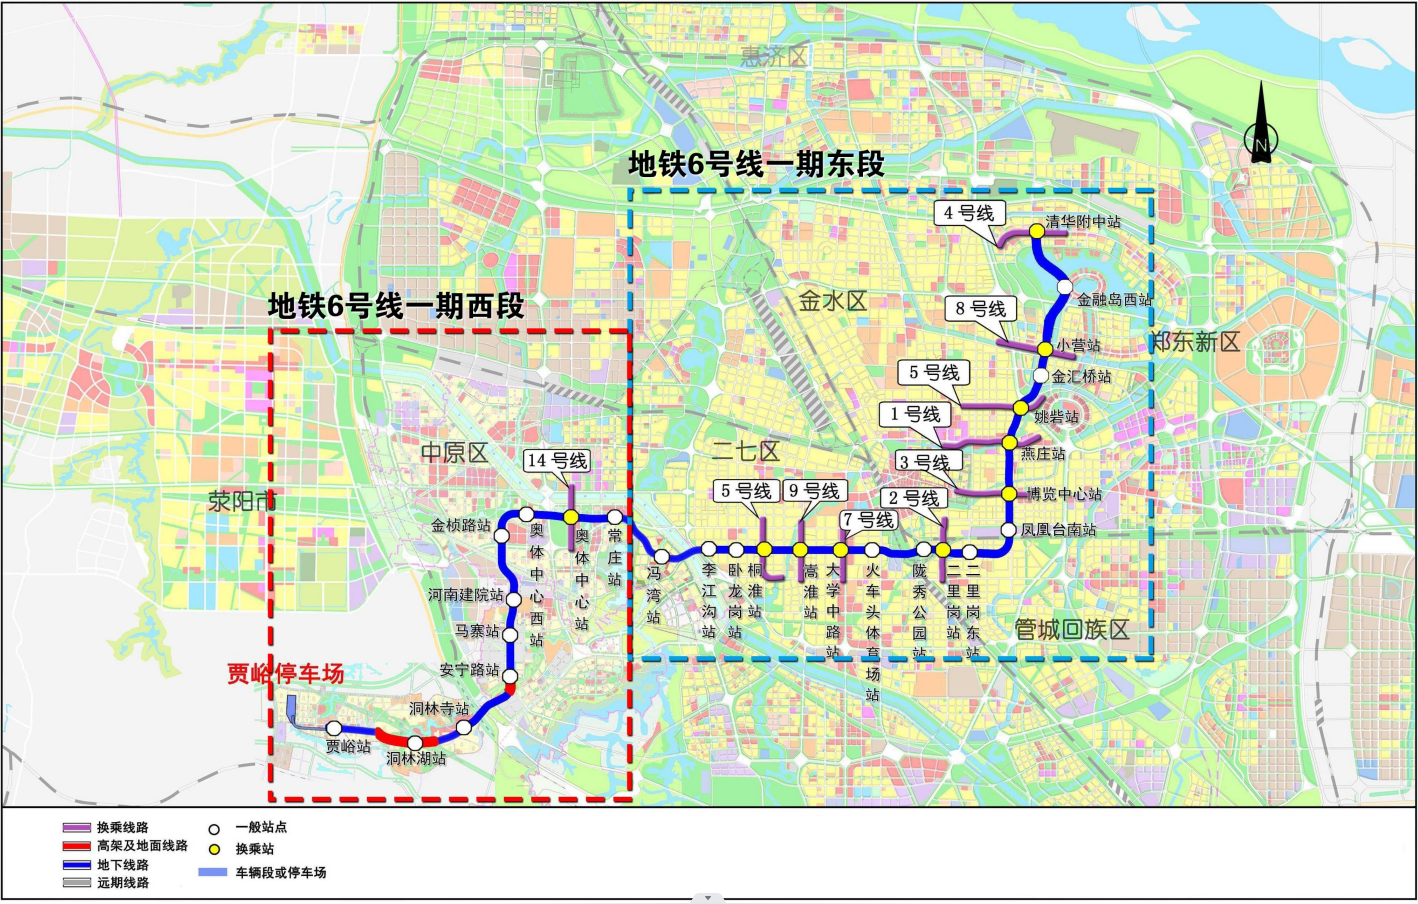 【机电工程】郑州市轨道交通6号线一期东北段工程